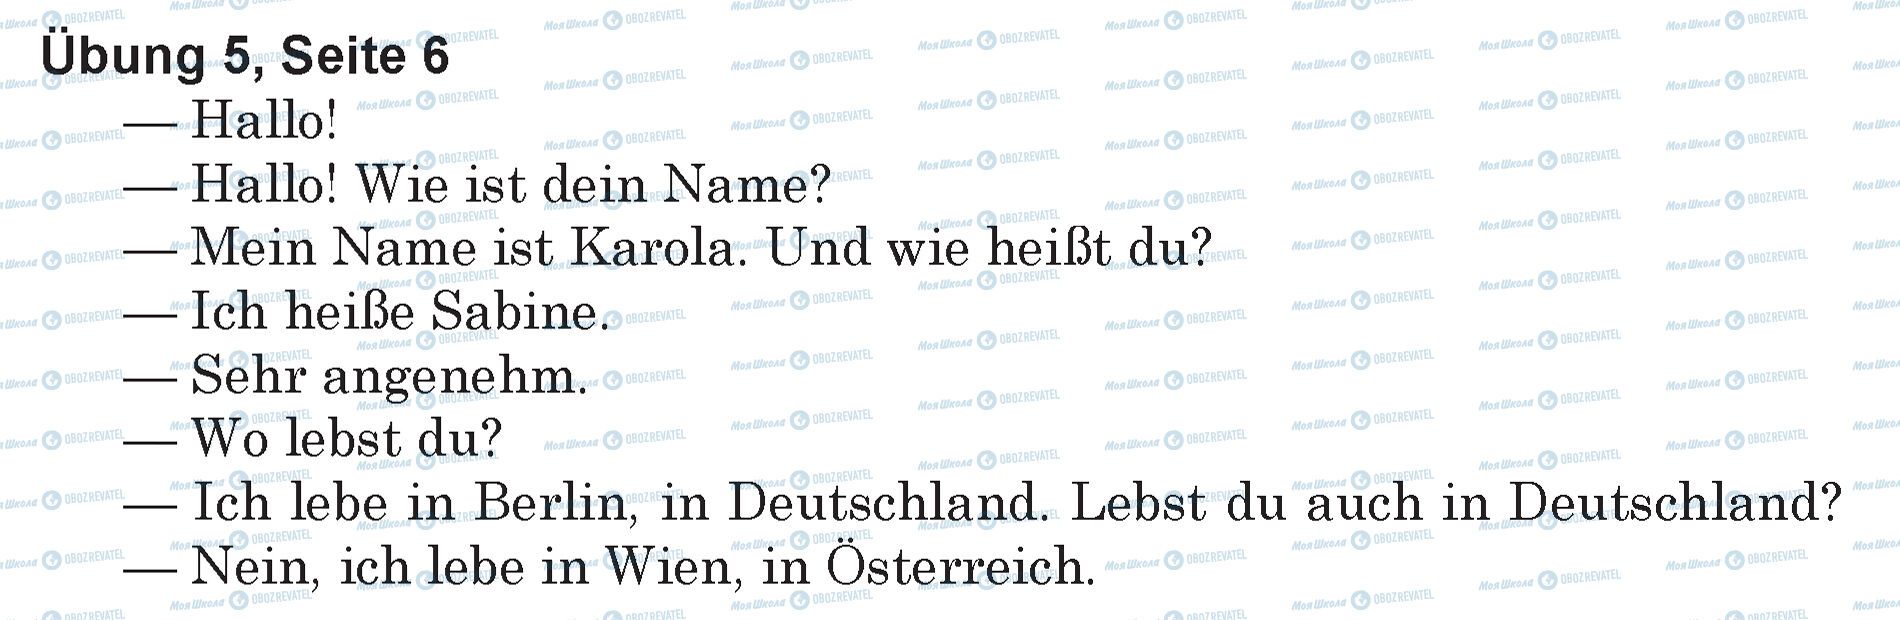 ГДЗ Німецька мова 5 клас сторінка Ubung 5, Seite 6